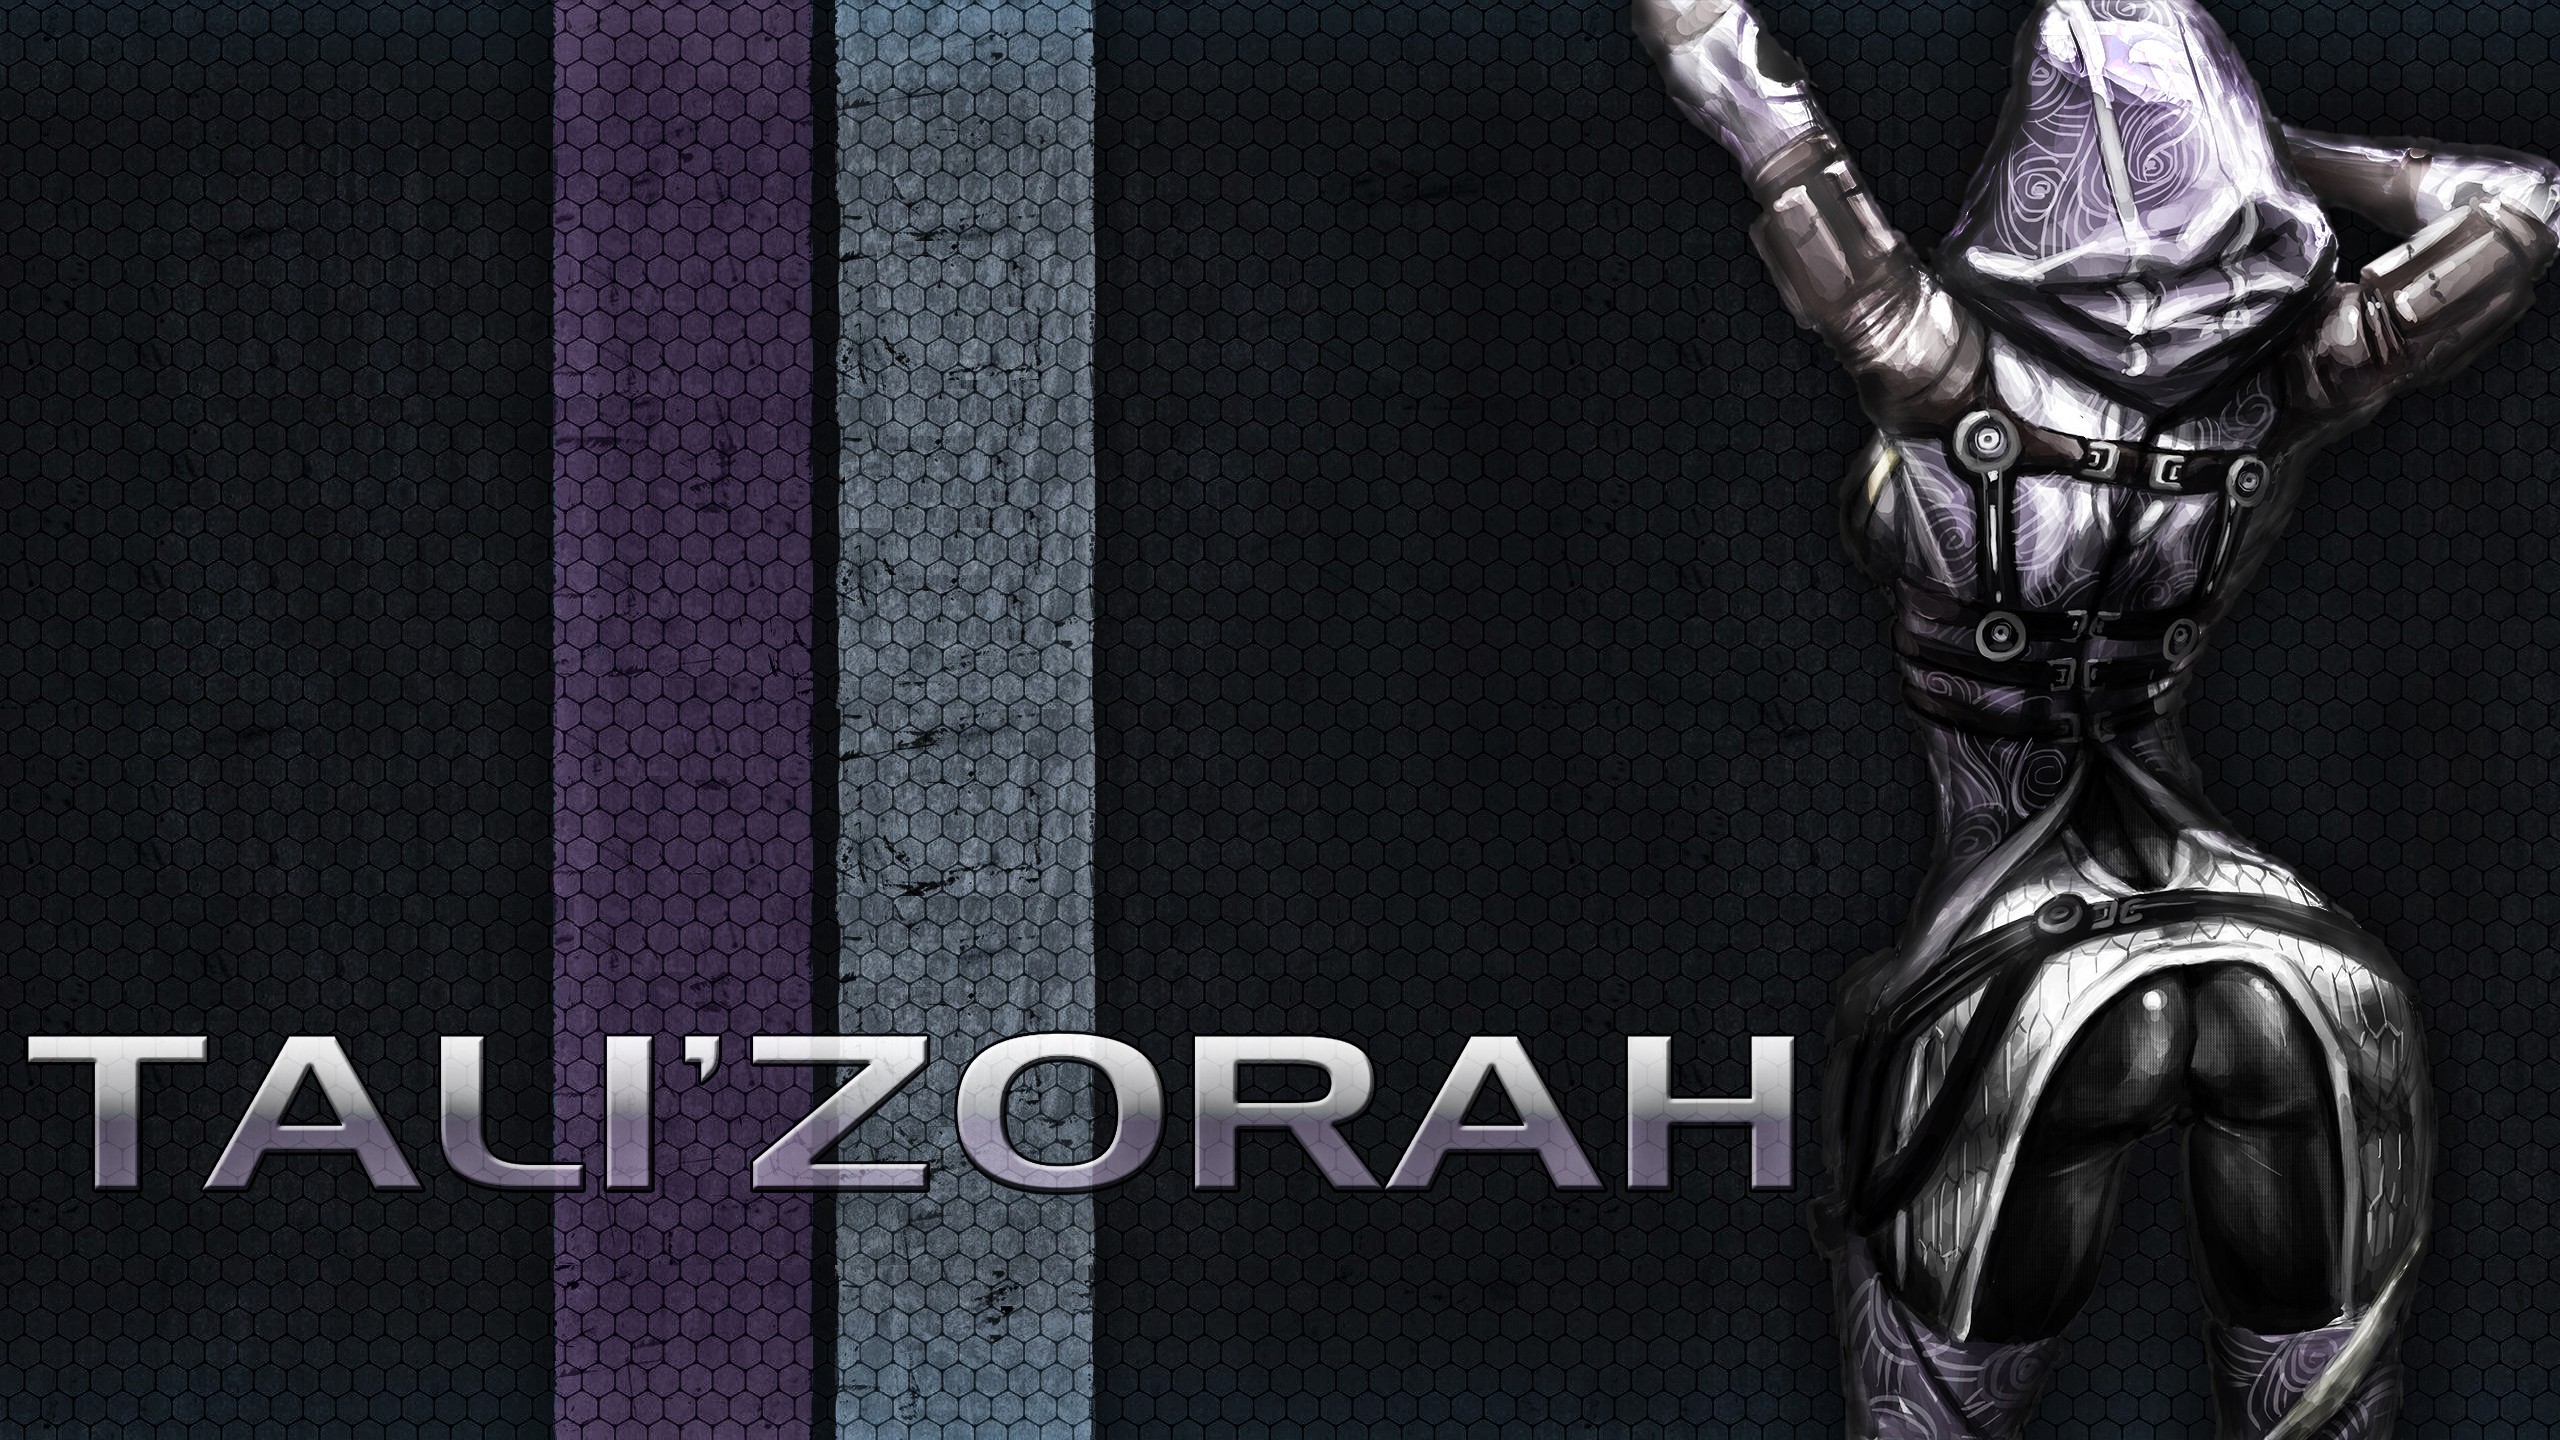 Video Game Mass Effect Tali Zorah Wallpaper